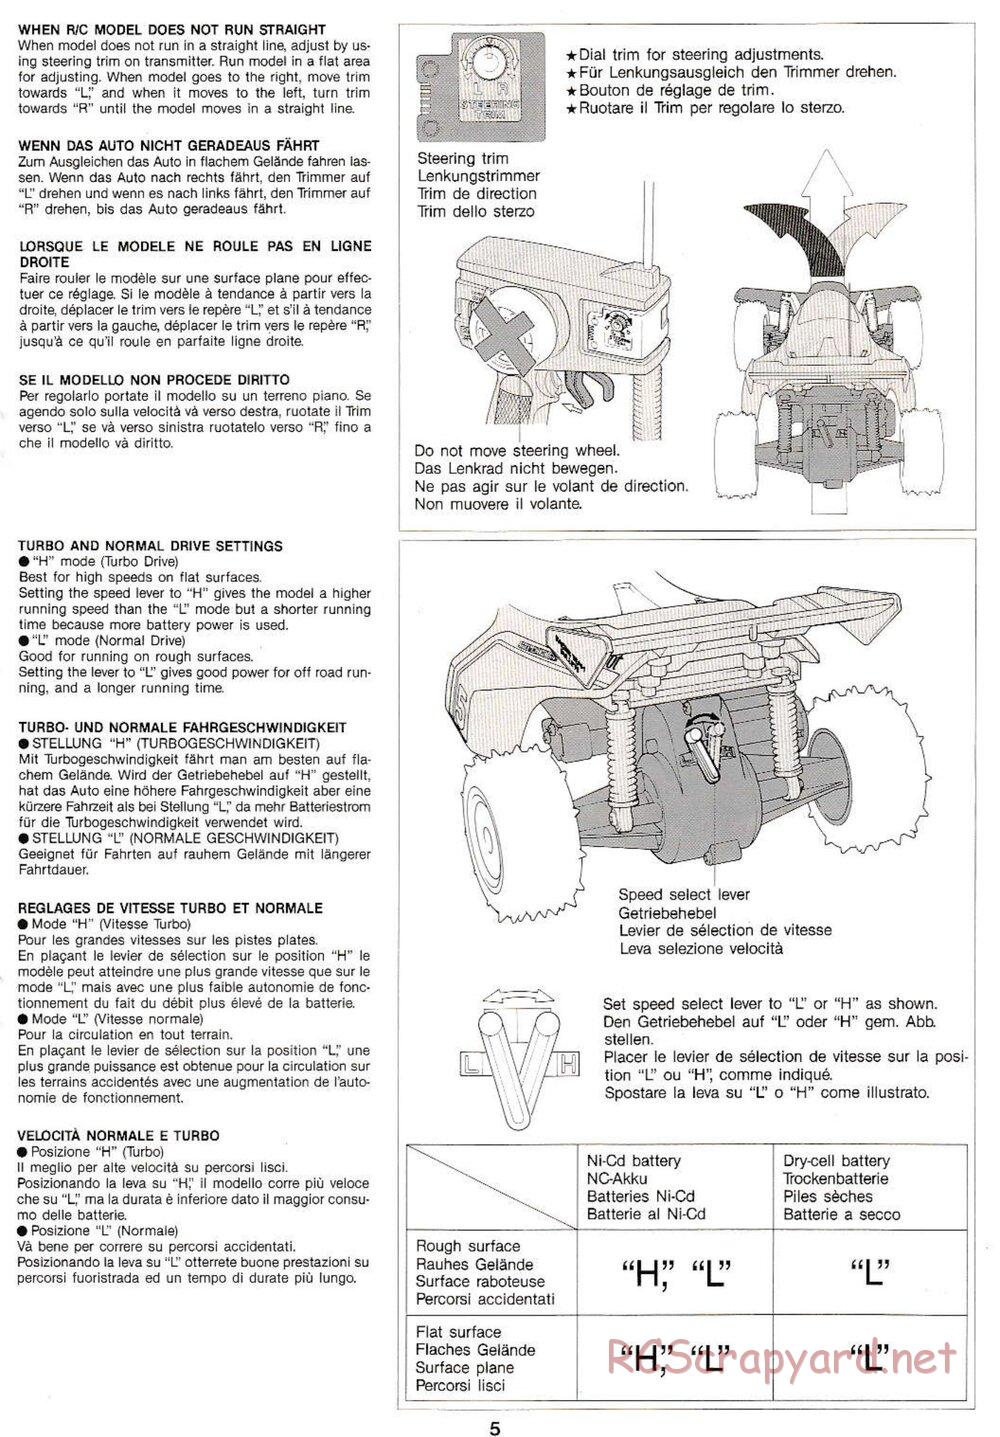 Tamiya - Thunder Shot QD Chassis - Manual - Page 5